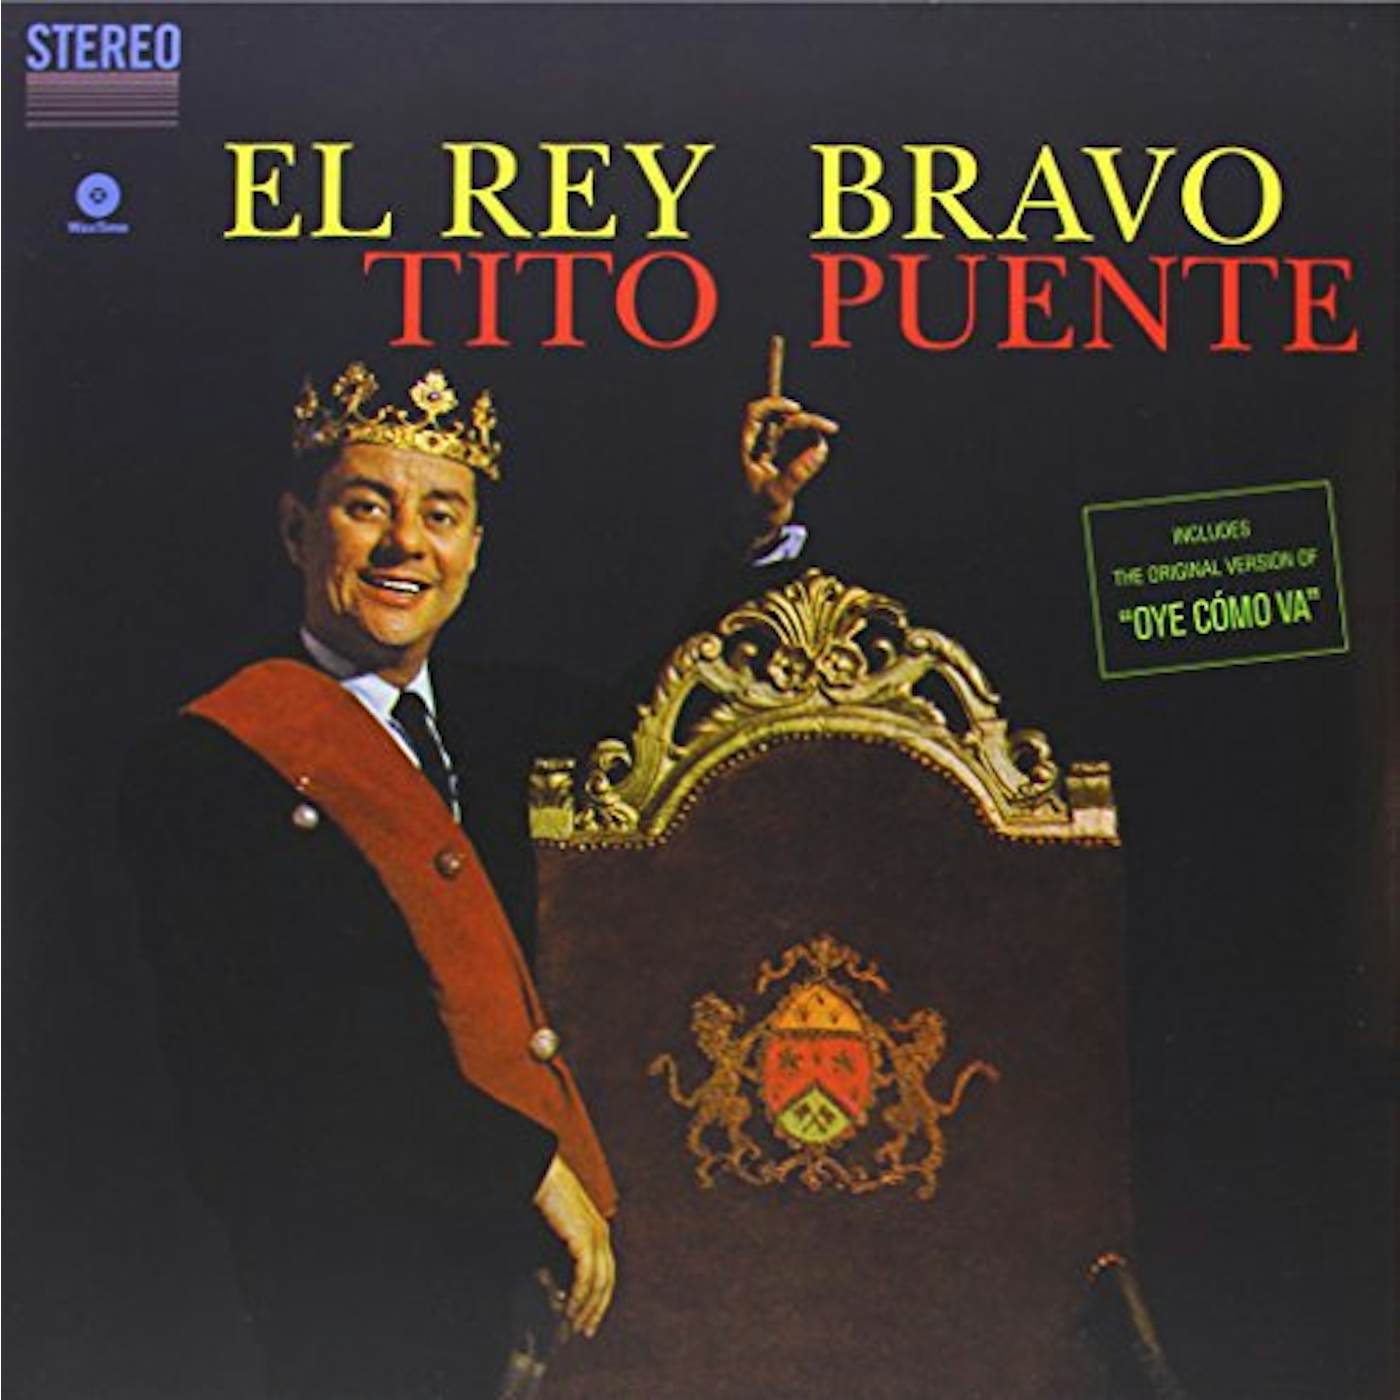 Tito Puente EL REY BRAVO Vinyl Record - Spain Release